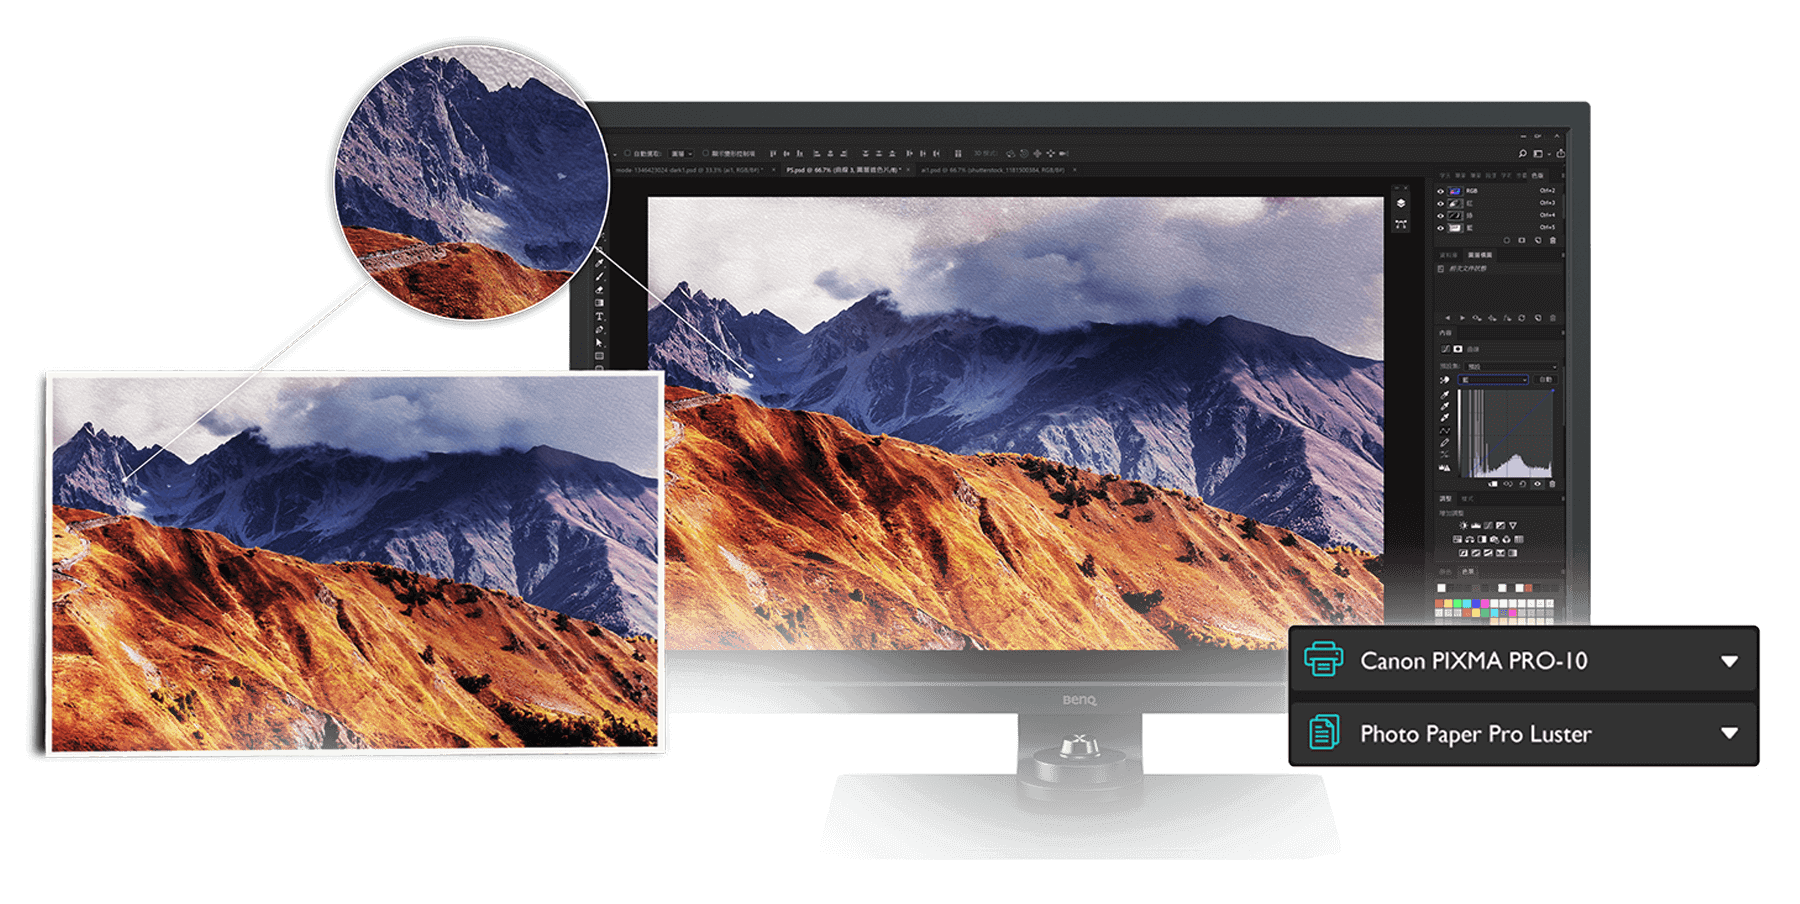 Phần mềm độc quyền Paper Color Sync của BenQ trên màn hình xử lý hình ảnh PhotoVue SW Series cho phép mô phỏng chuẩn xác chất lượng màu bản in